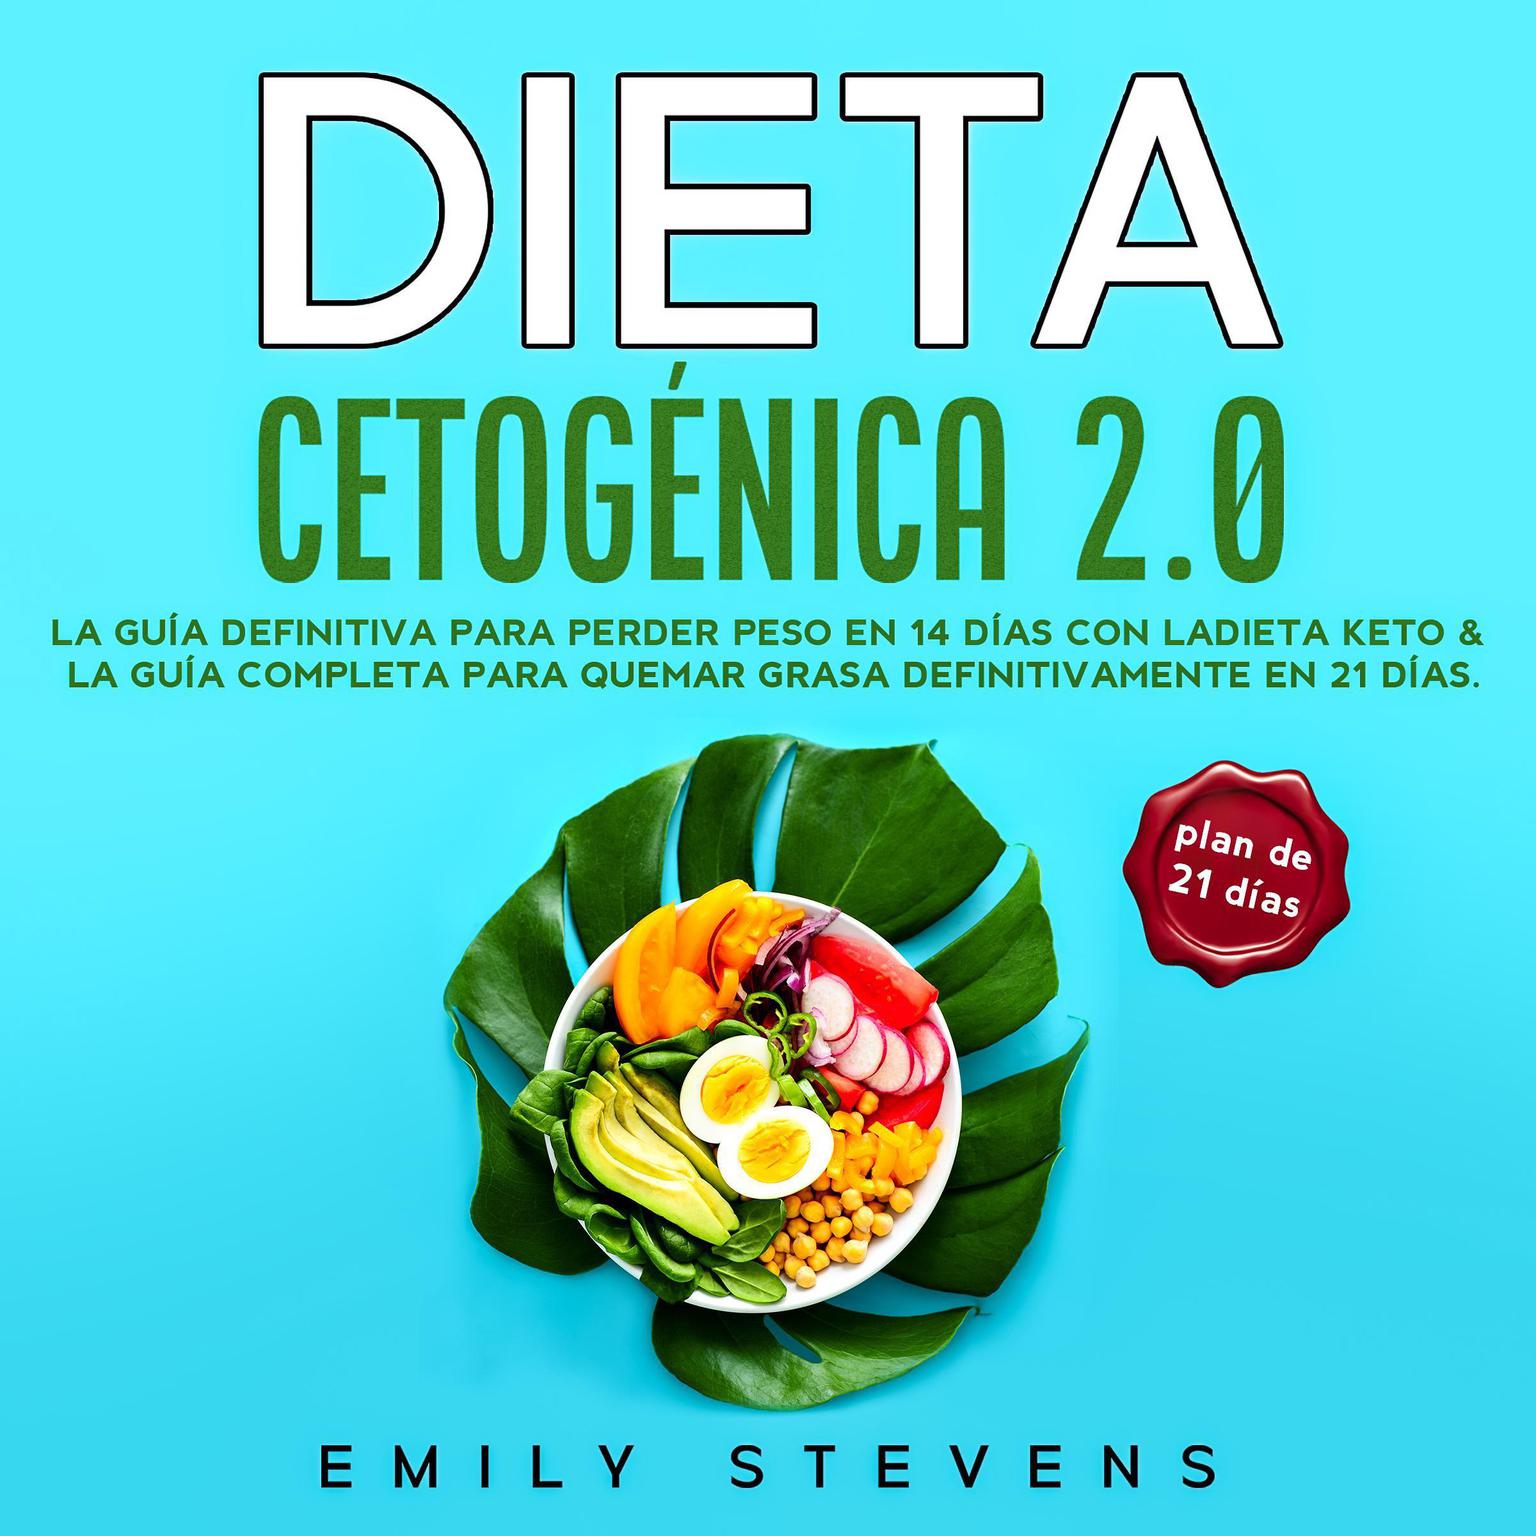 Dieta Cetogénica 2.0: La guía definitiva para perder peso en 14 días con la dieta keto & La guía completa para quemar grasa definitivamente en 21 días Audiobook, by Emily Stevens